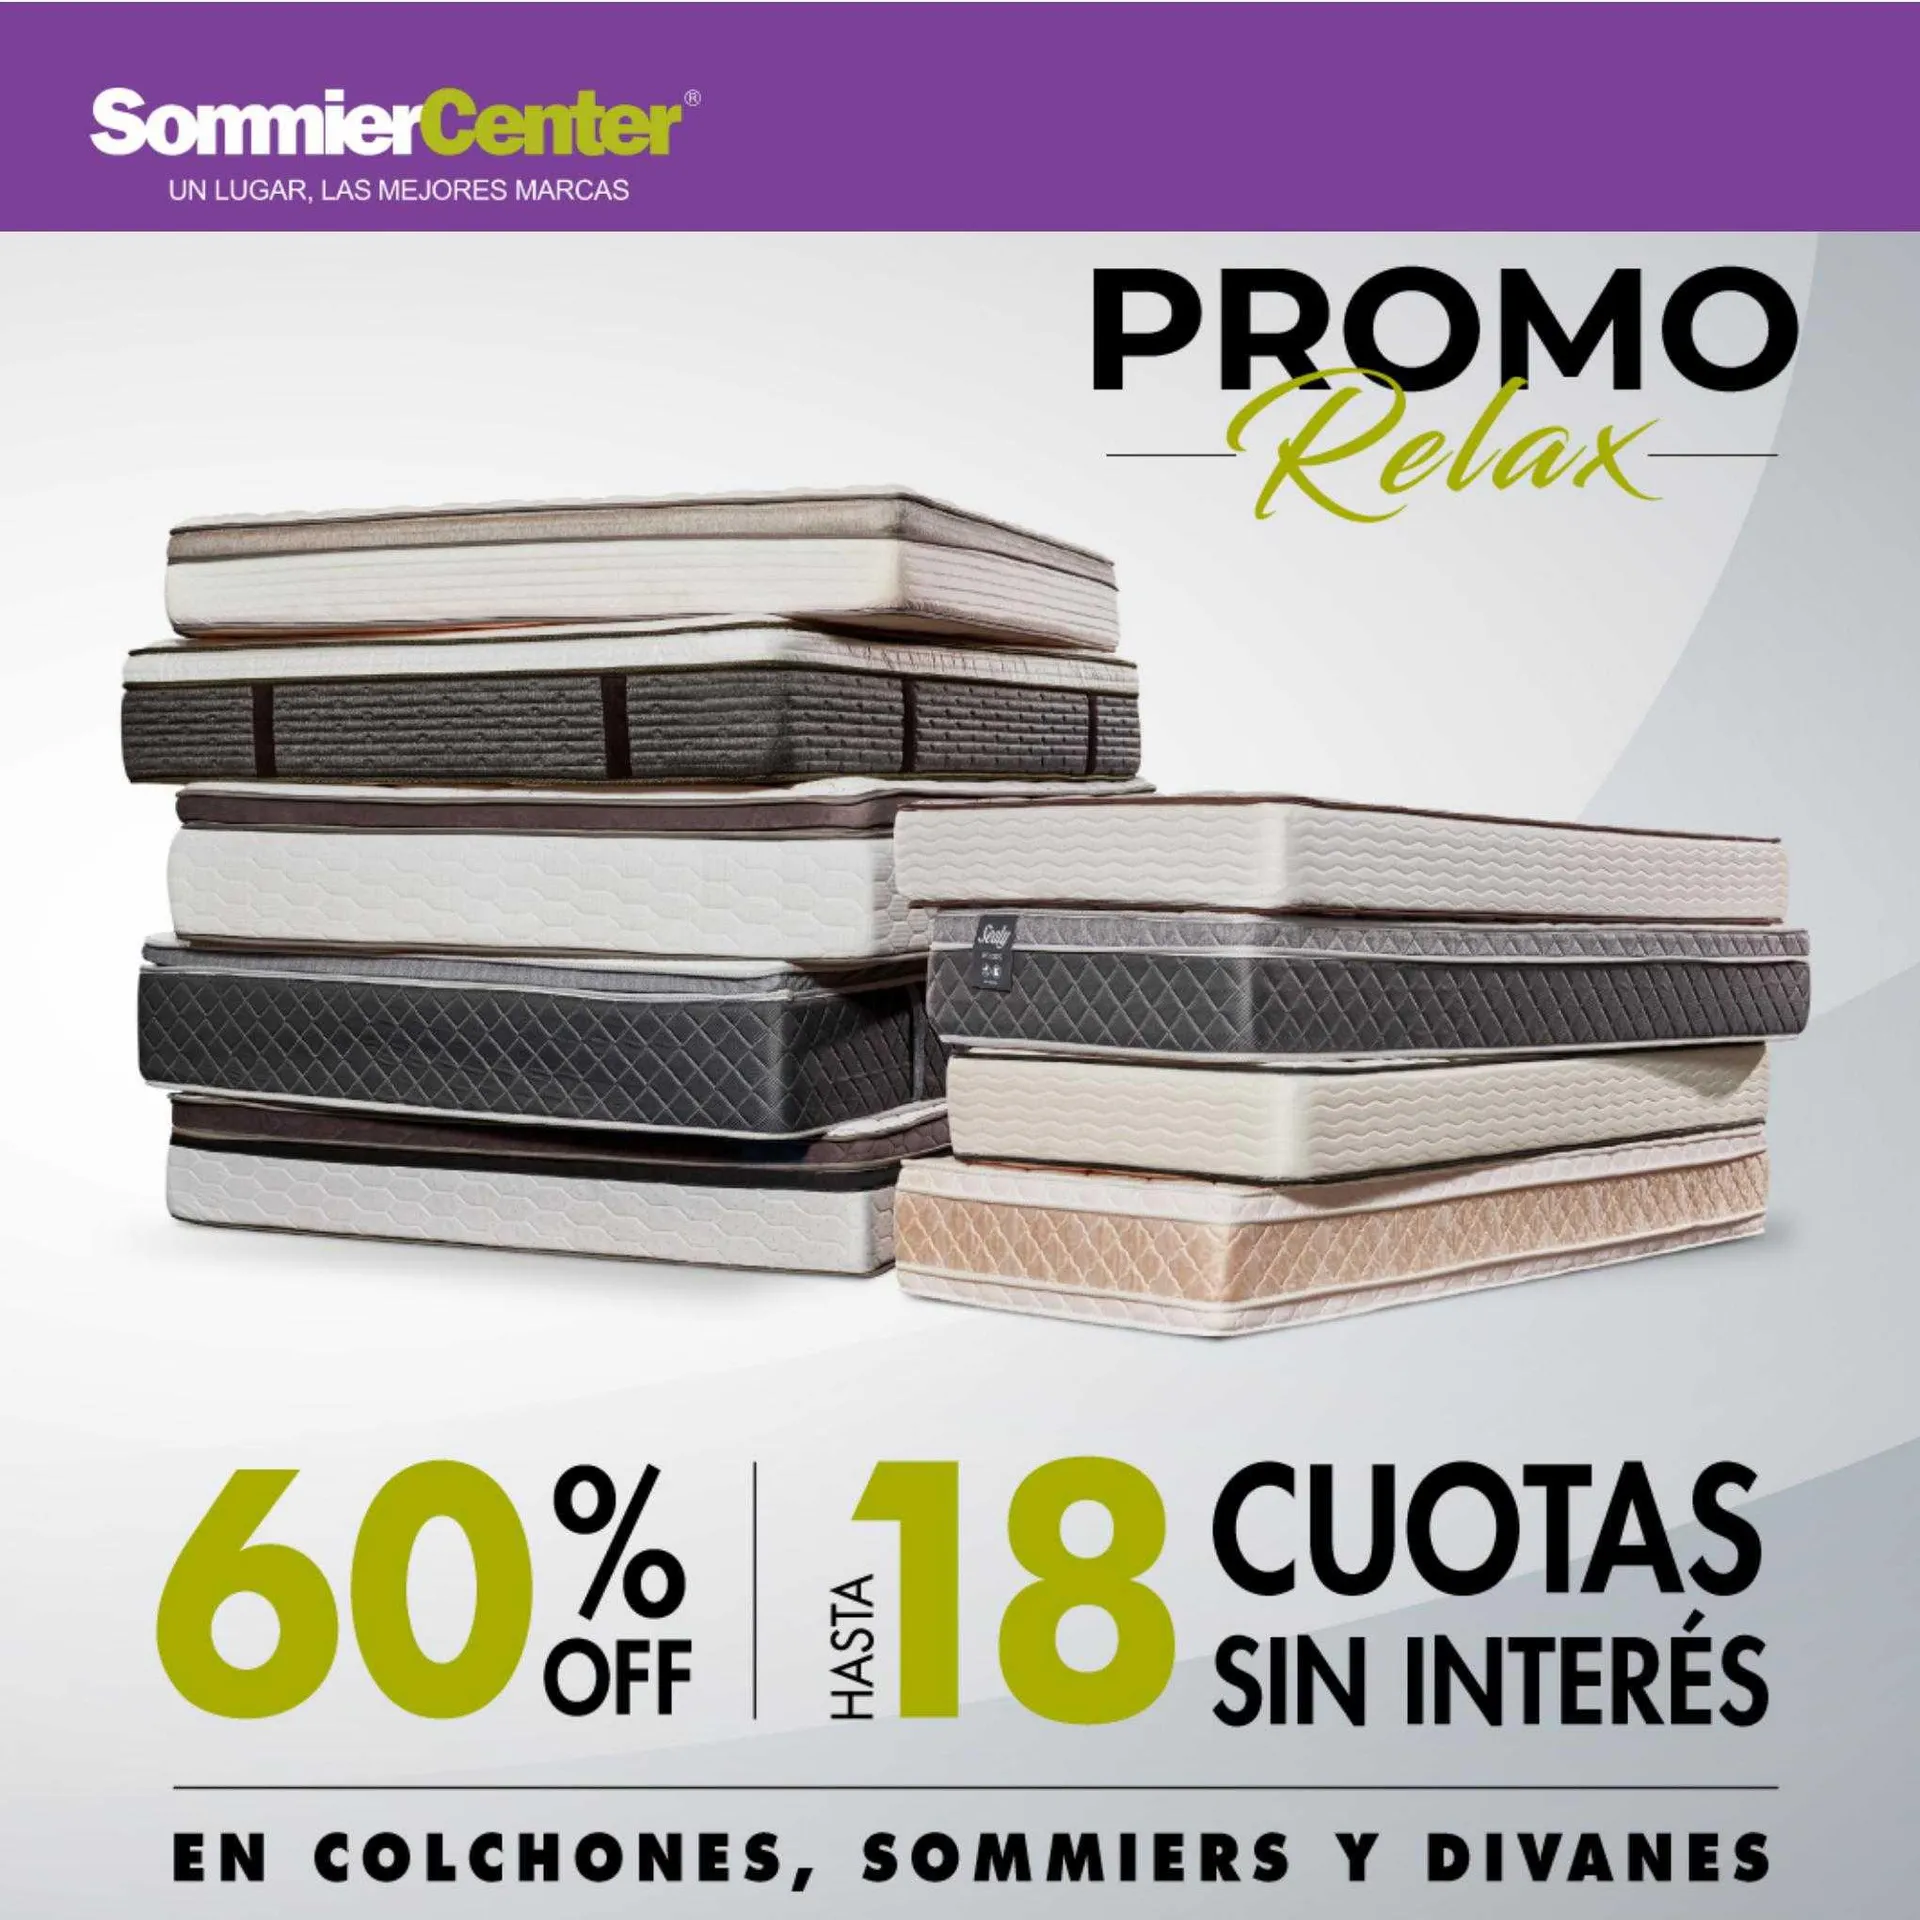 Catálogo Sommier Center - 1